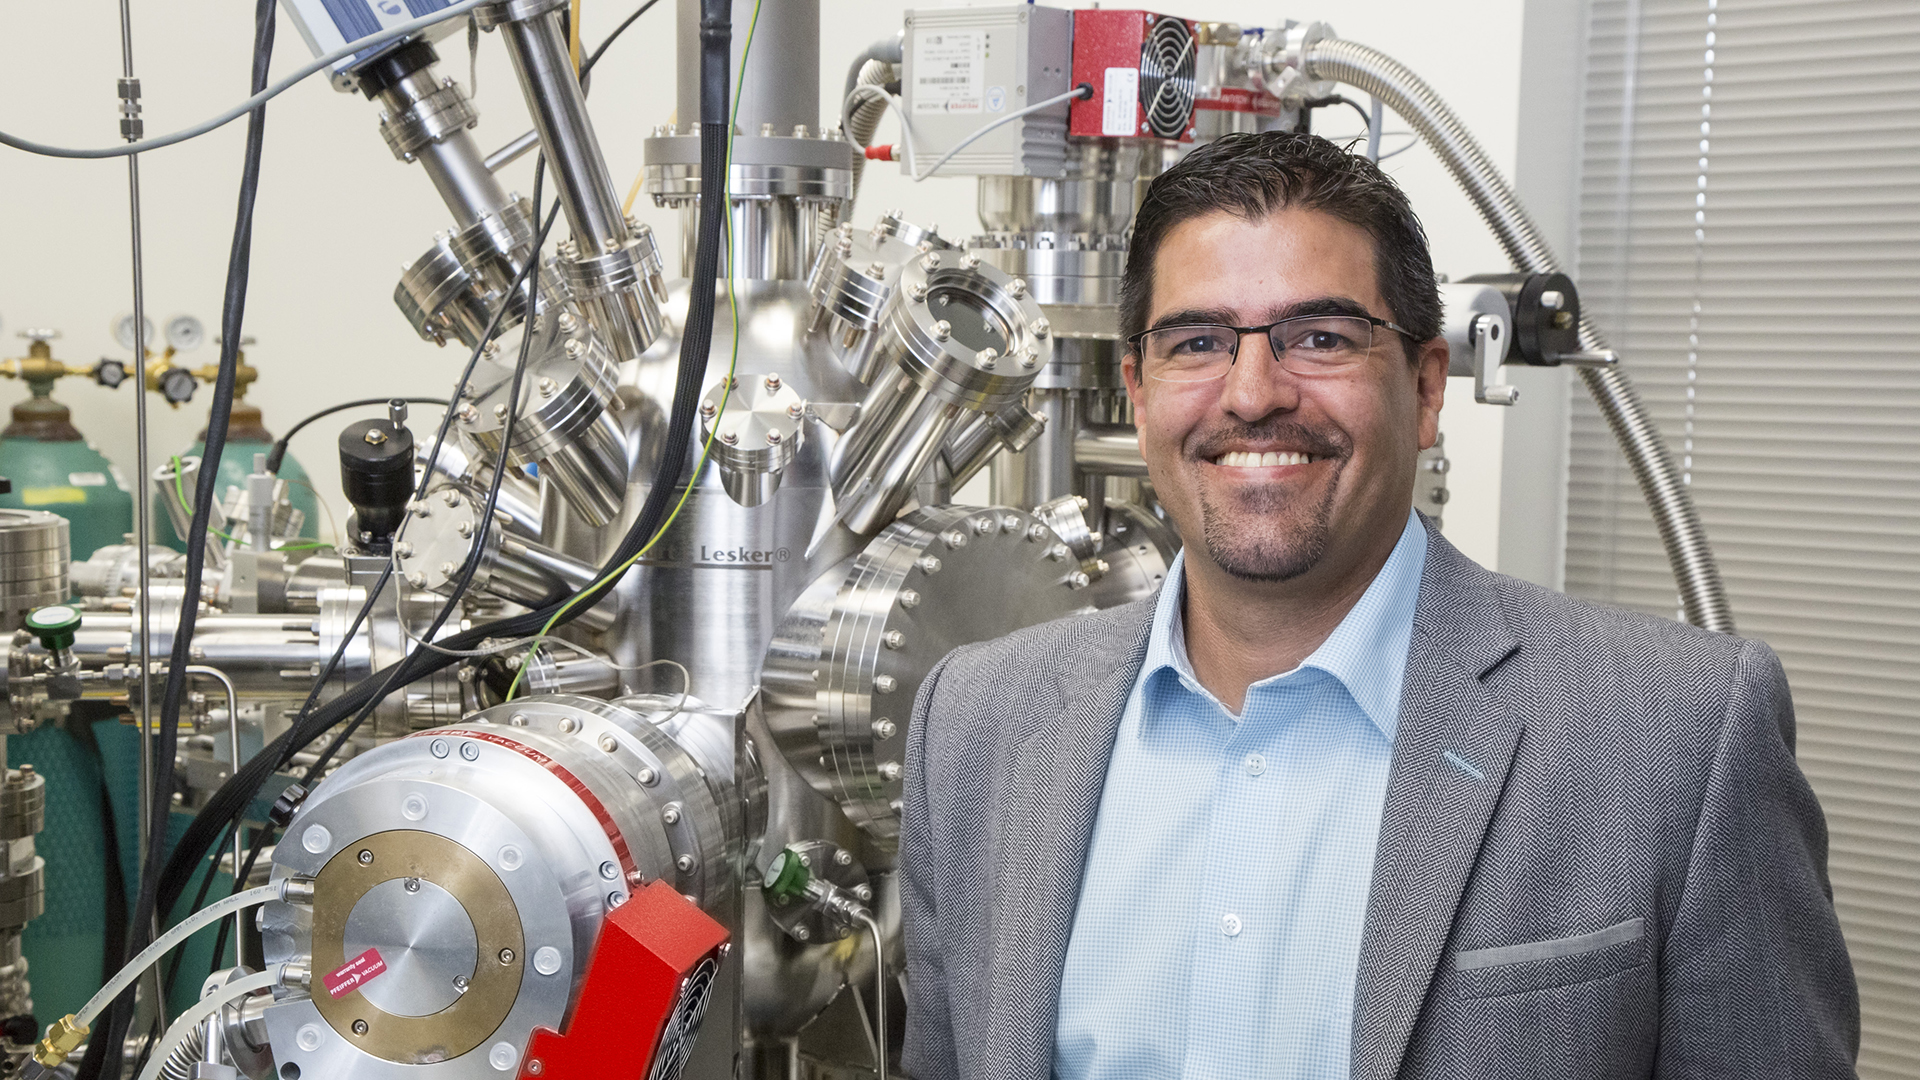 JP Allain Chosen as Nuclear Engineering Head at Penn State